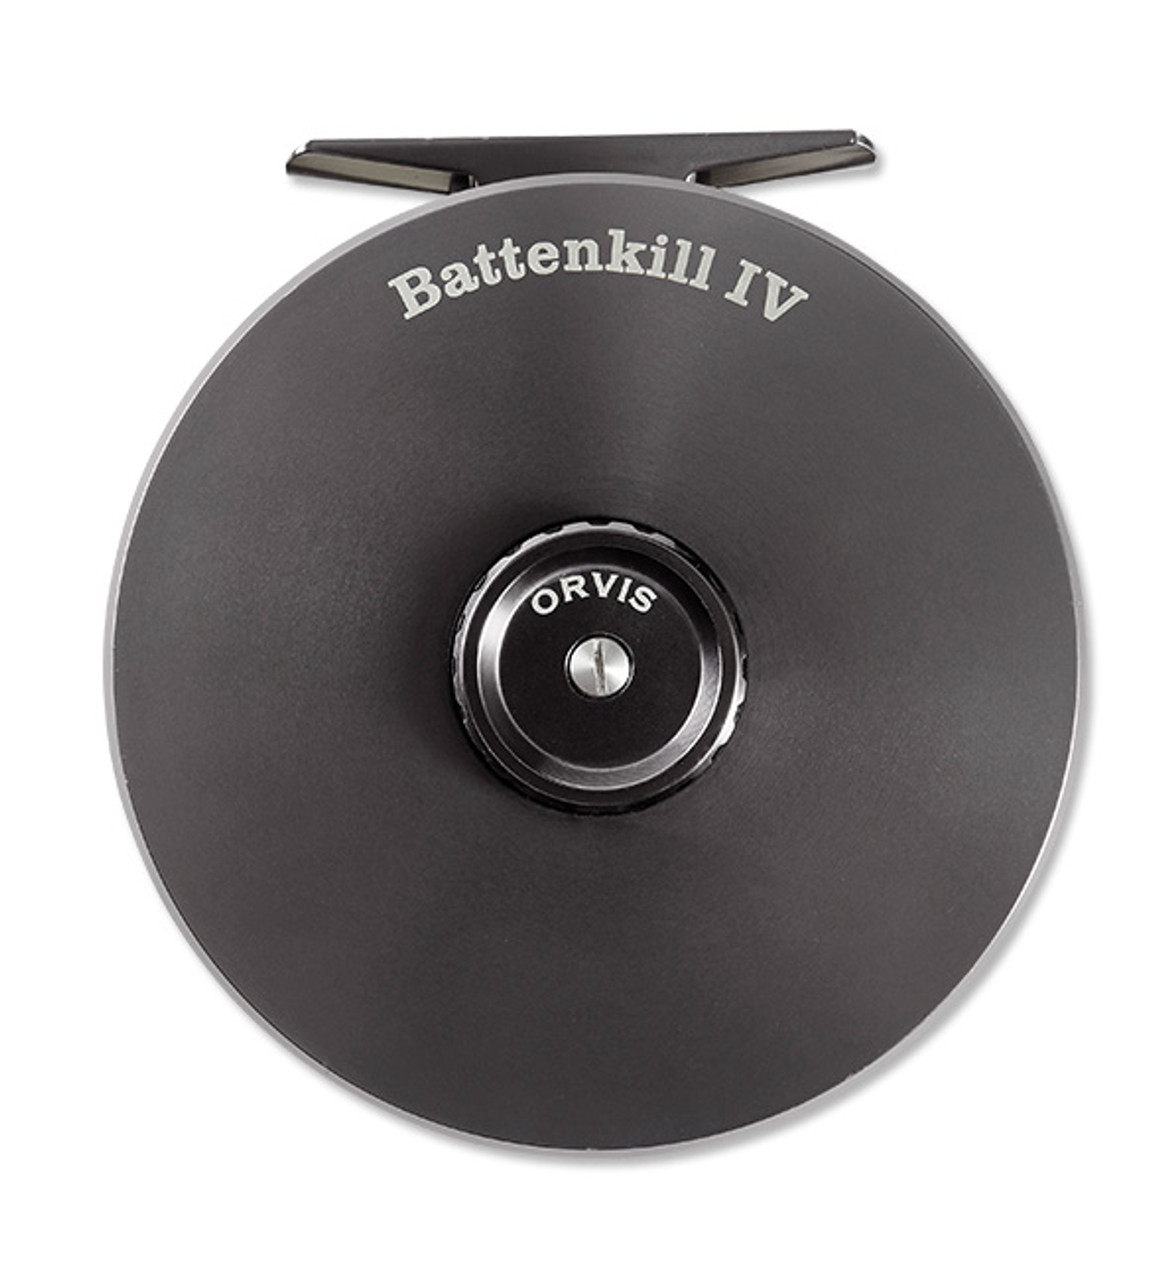 New Orvis Battenkill Disc fly-reel - Flyfishing Blog